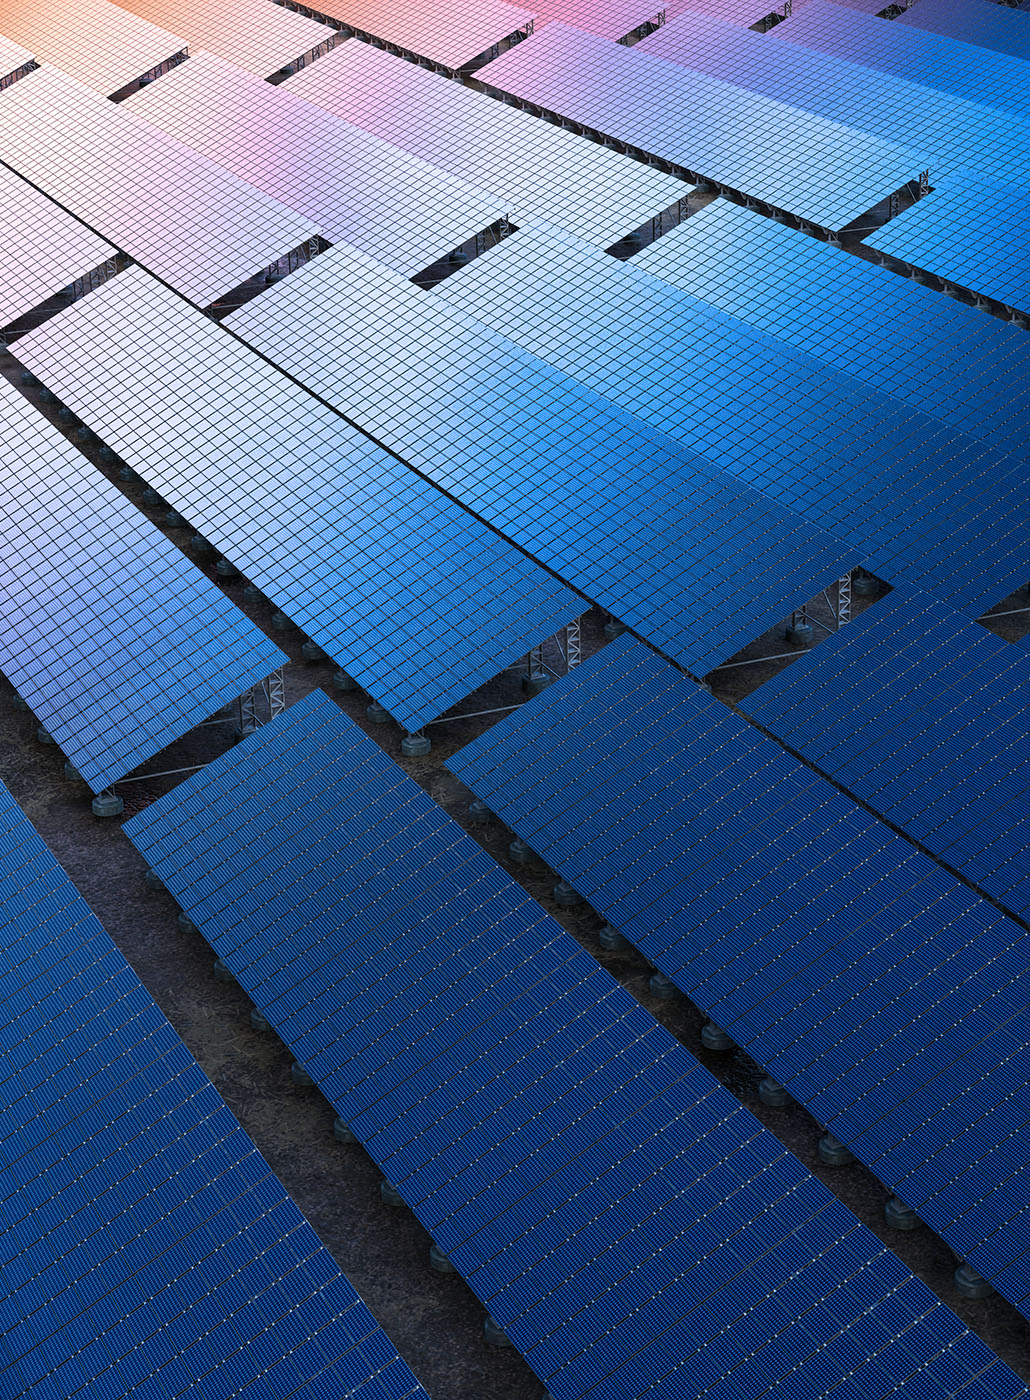 Reihen von Sonnenkollektoren in einem Betrieb für saubere erneuerbare Energien.